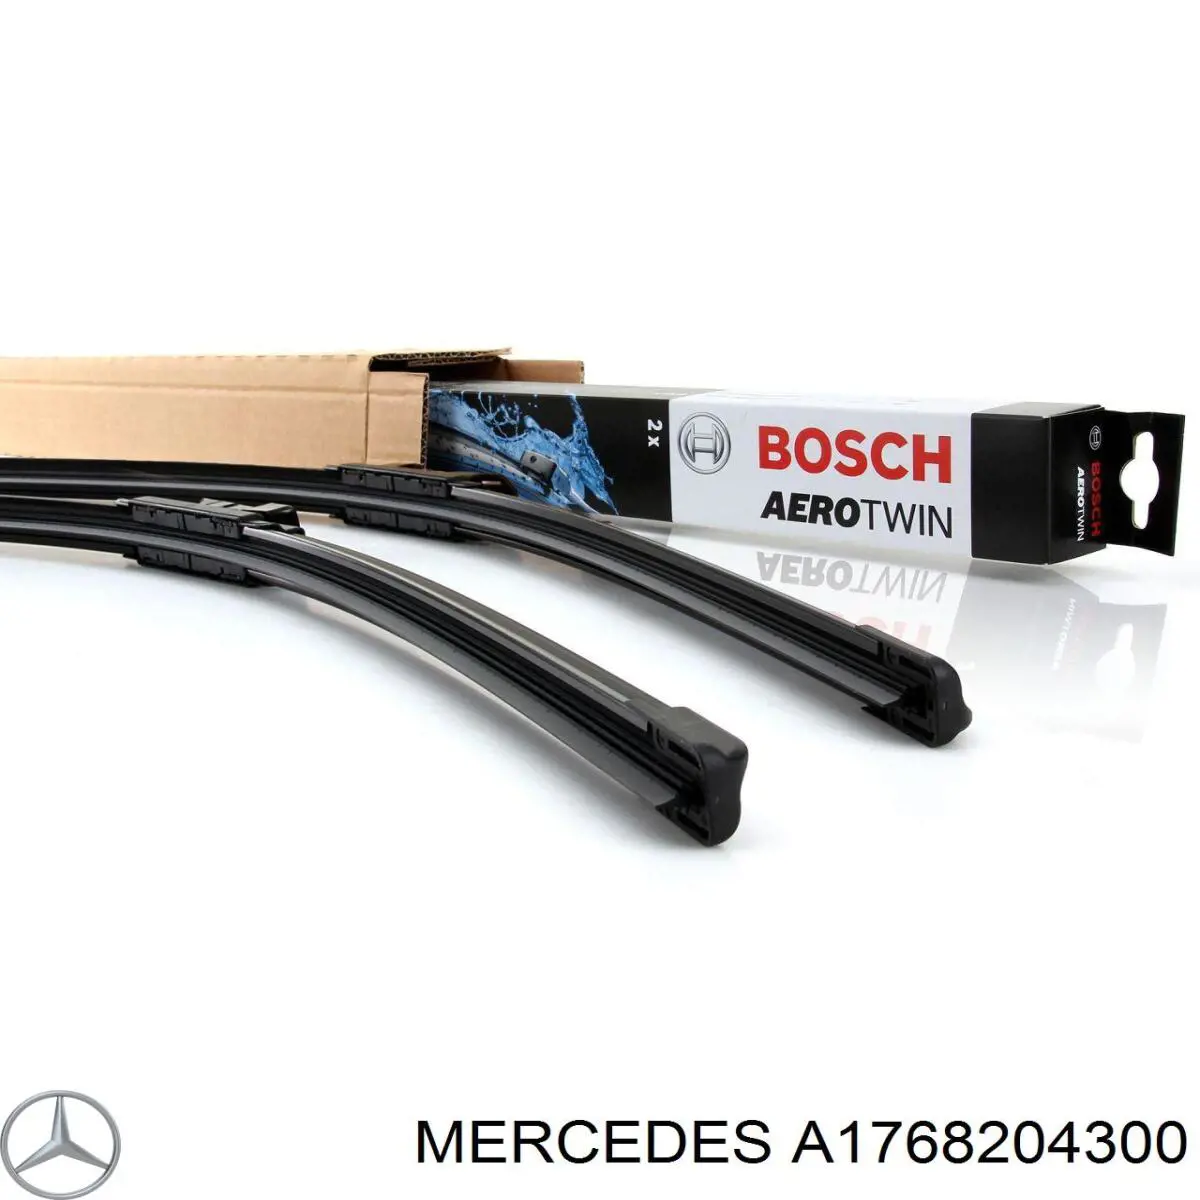 A1768204300 Mercedes Щітка-двірник лобового скла, комплект з 2-х шт. (600/480мм)